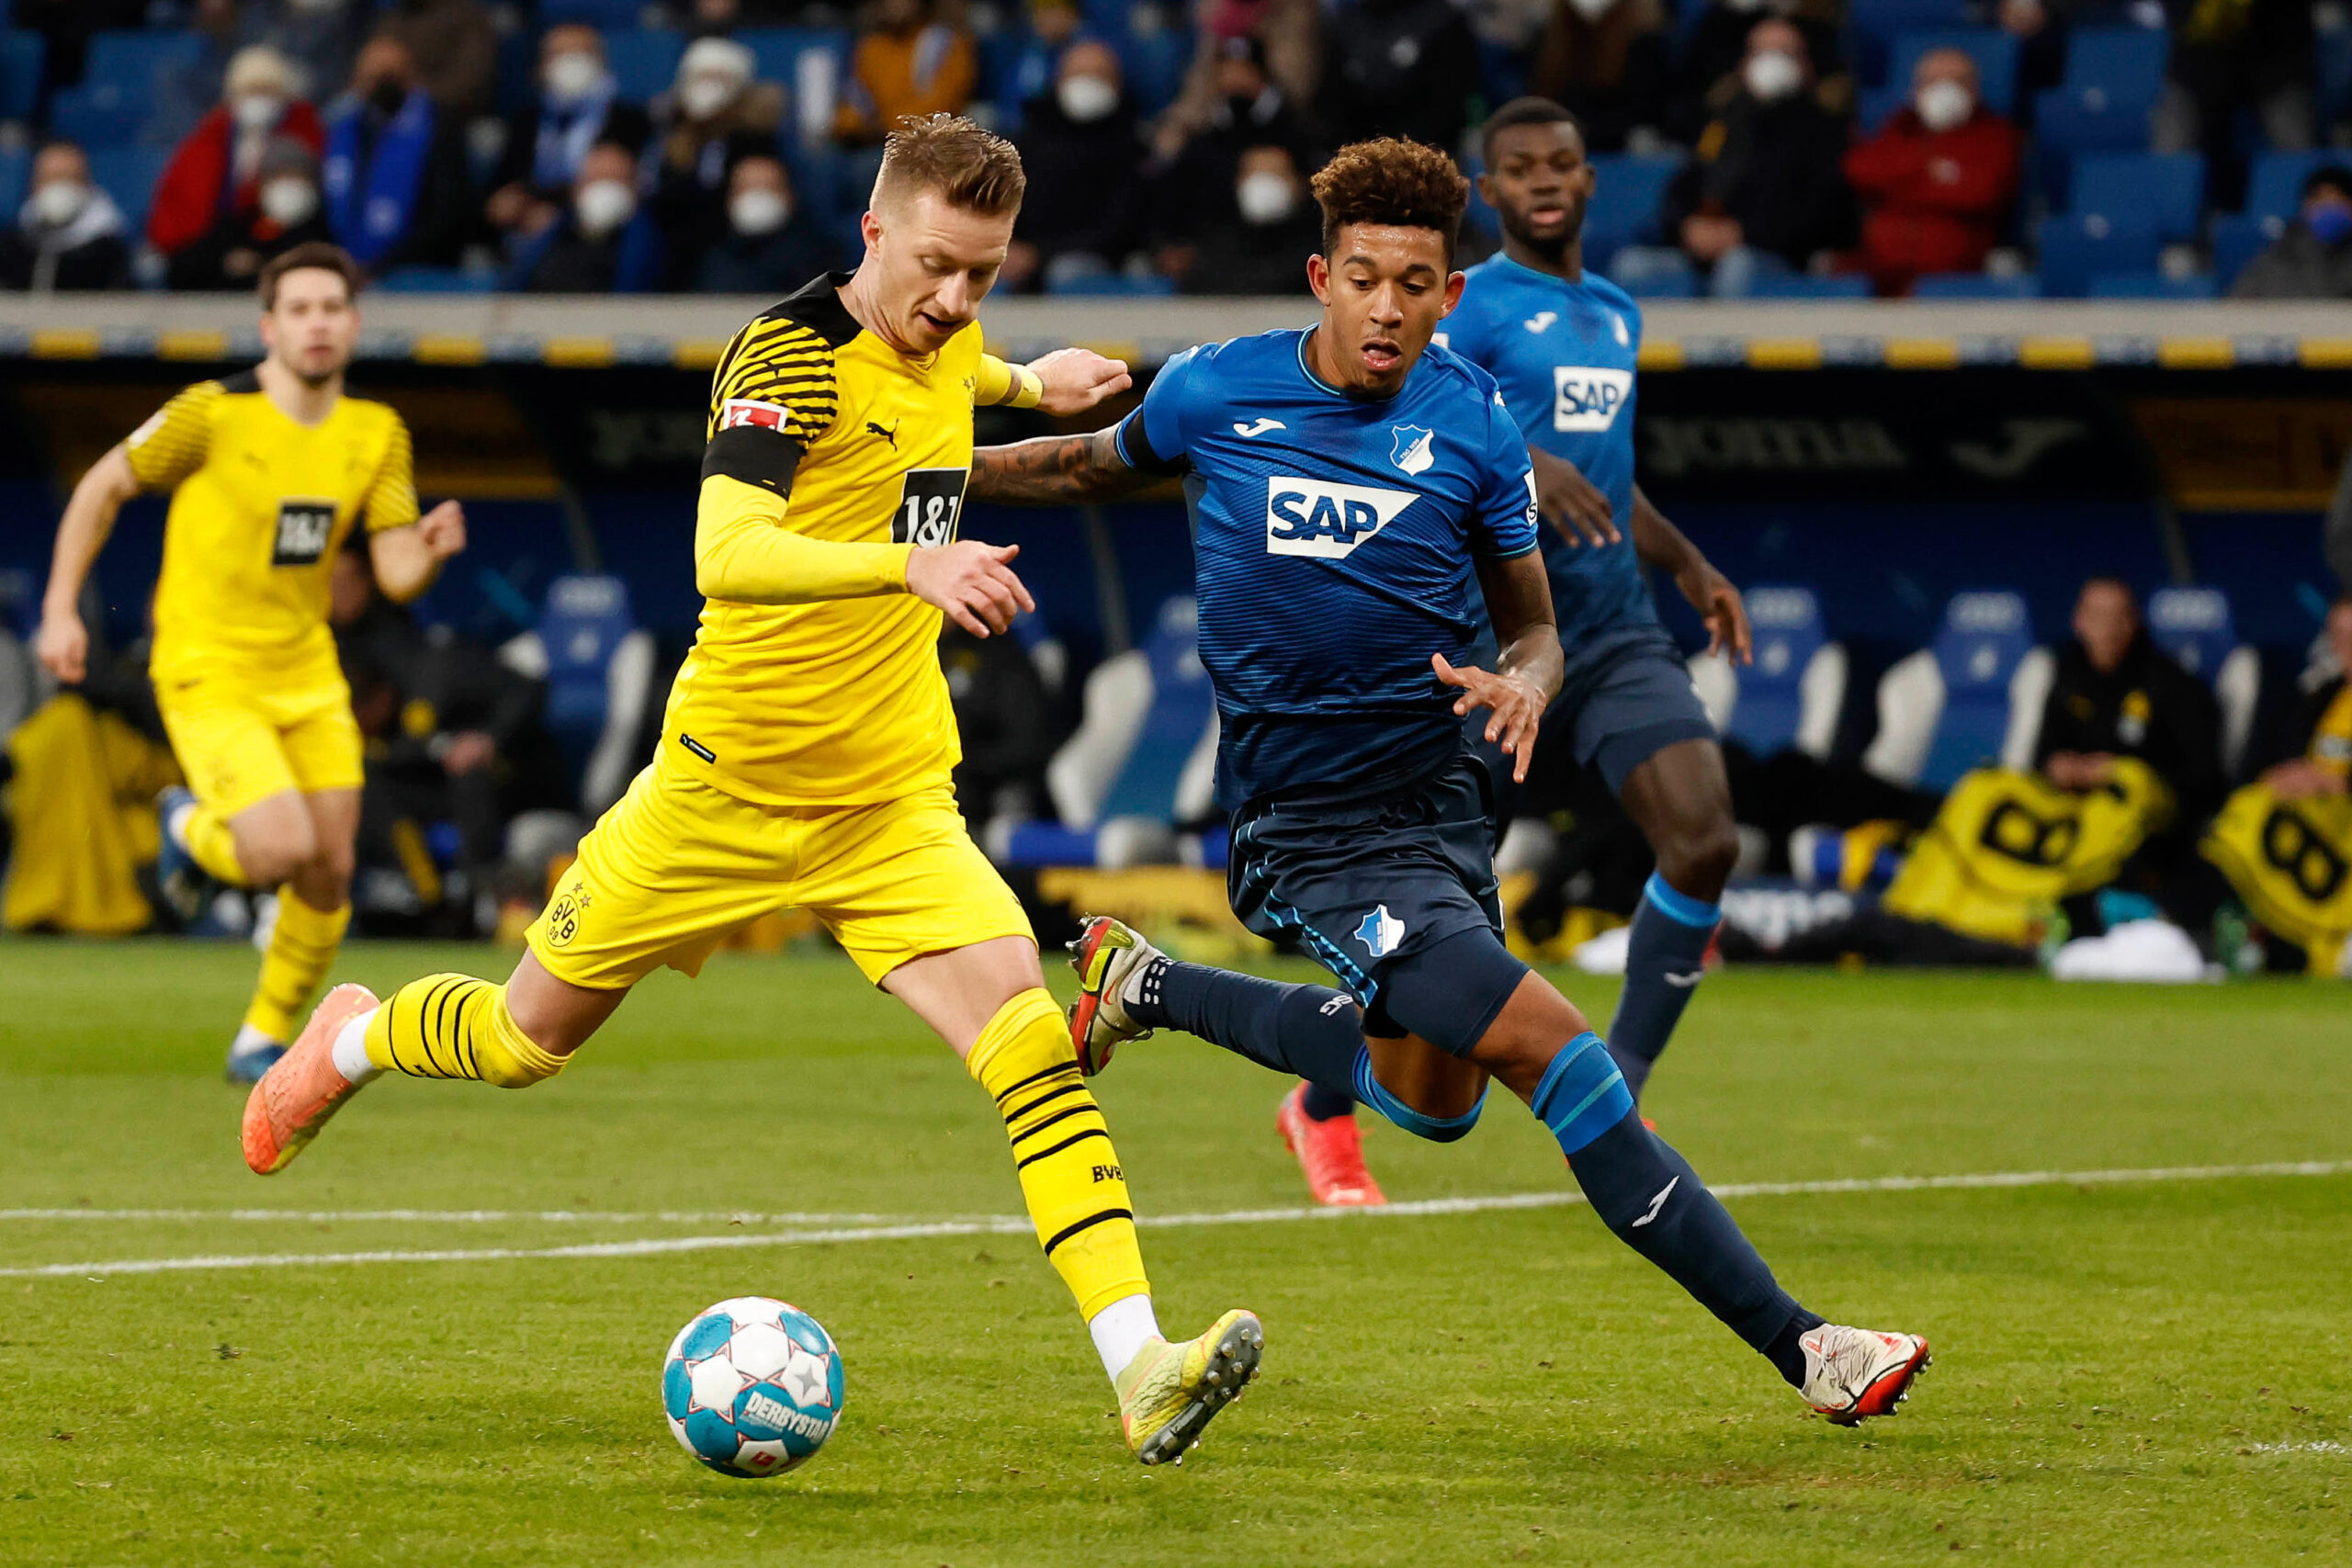 TSG Hoffenheim – Borussia Dortmund typy i kursy bukmacherskie